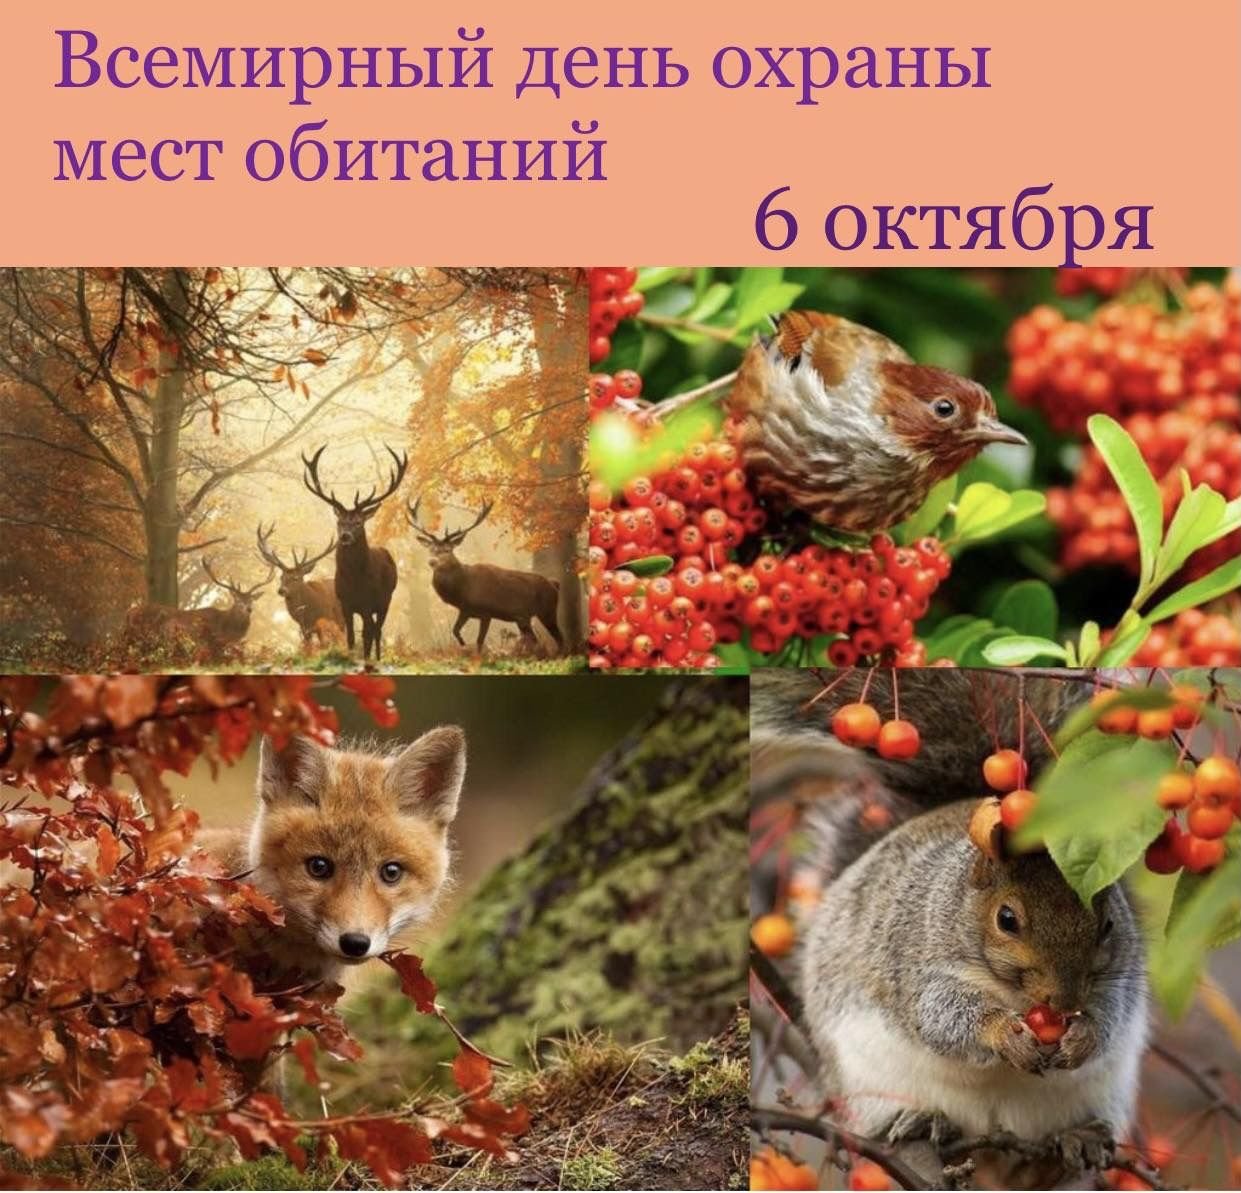 5 сезонных изменений у животных. Живая природа осенью. Растения и животные осенью. Осенние изменения в живой природе. Изменения в живой природе осенью.